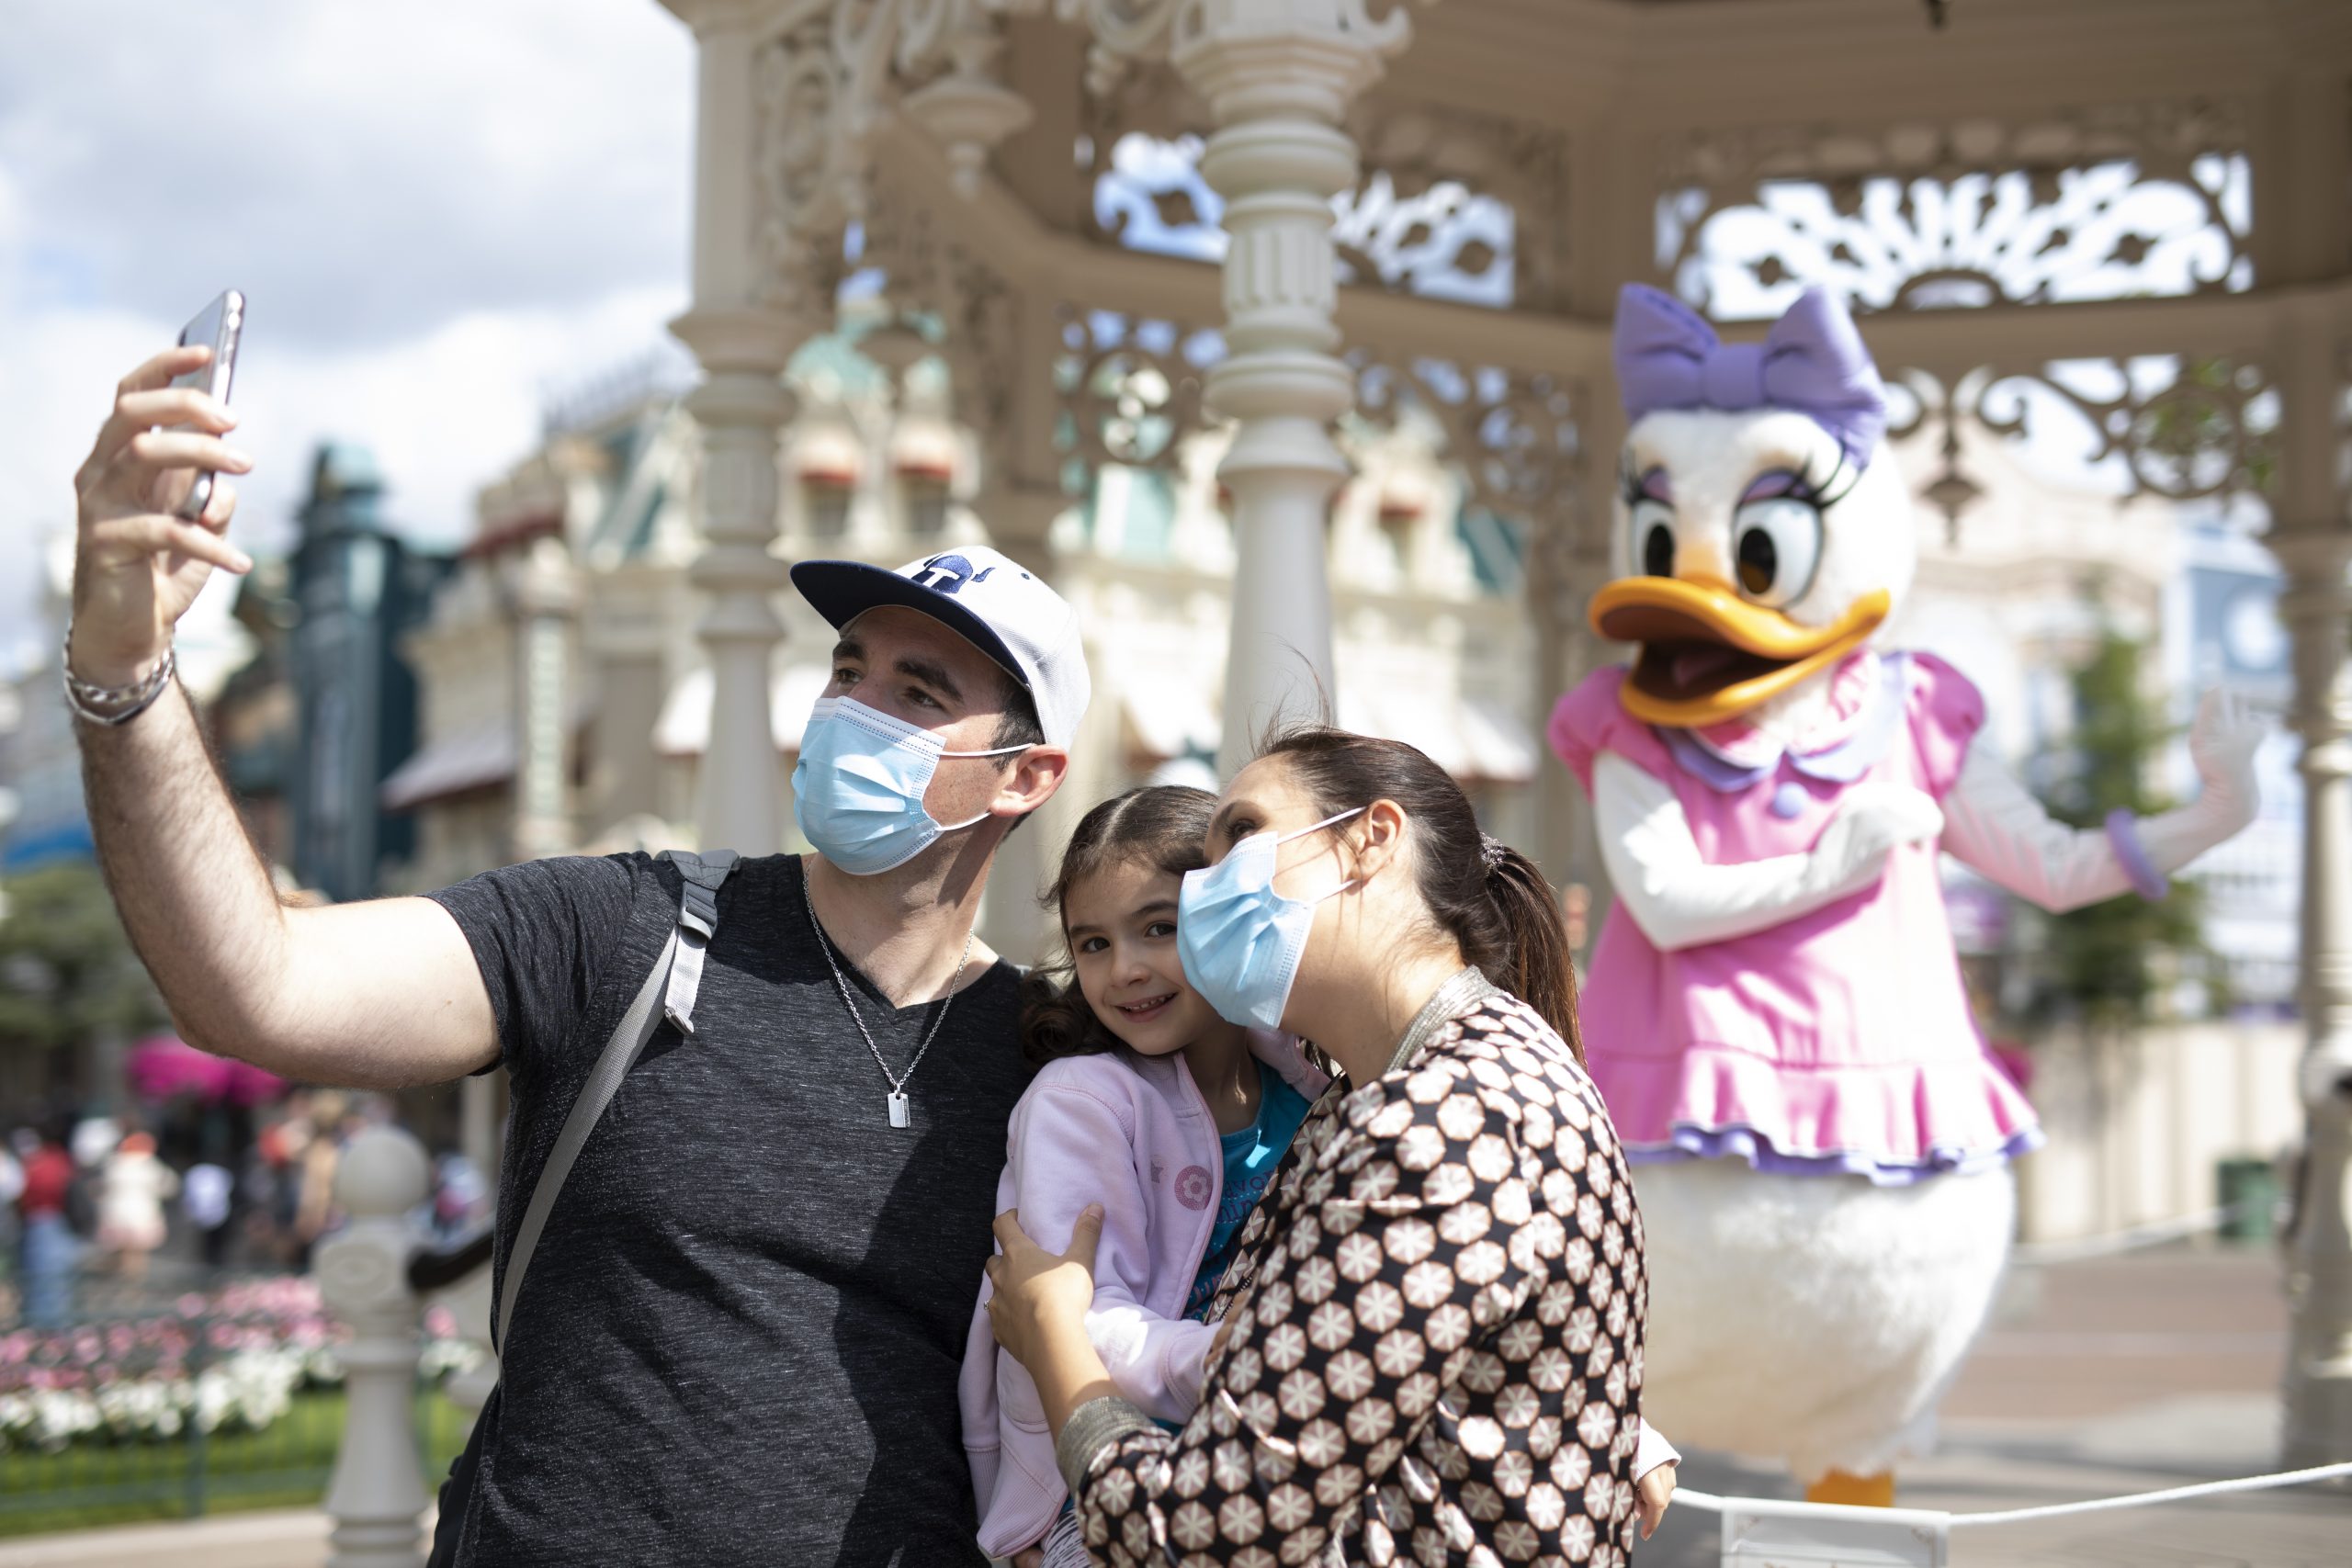 La Magie de Disneyland Paris continue sur les réseaux sociaux !